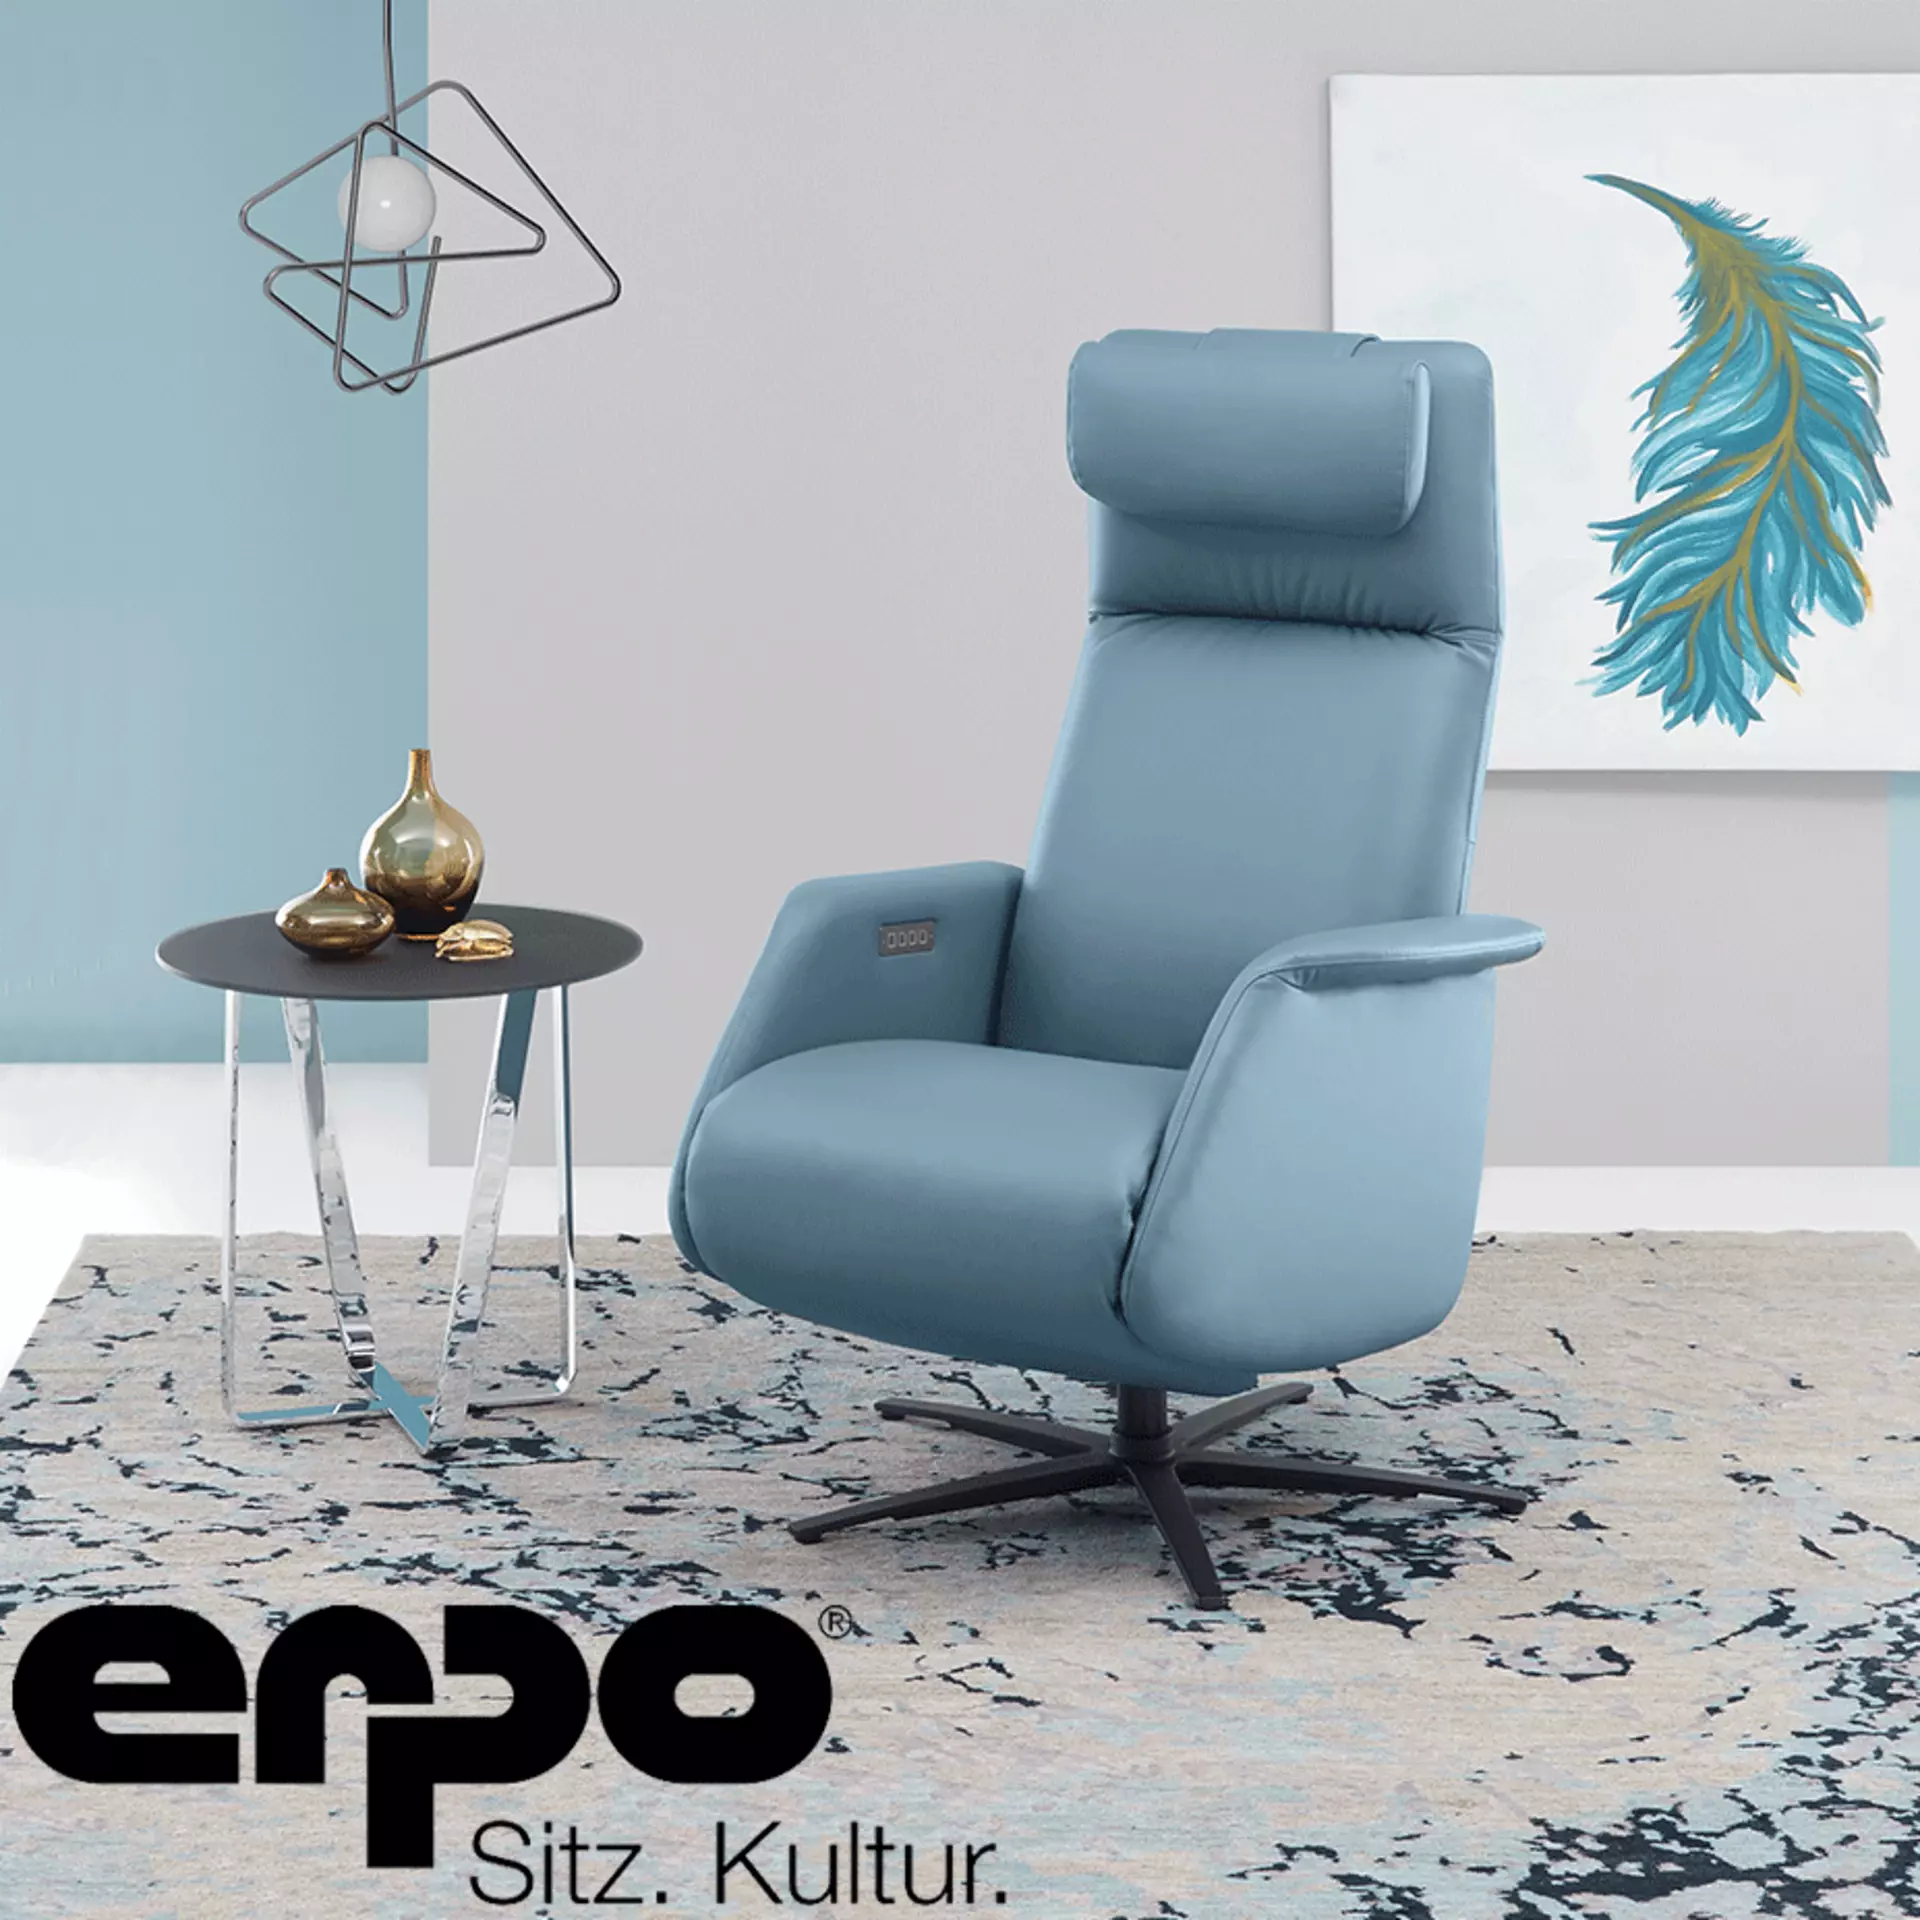 ERPO - Premiumhersteller für Sitzkomfort der Extraklasse bei Möbel Inhofer